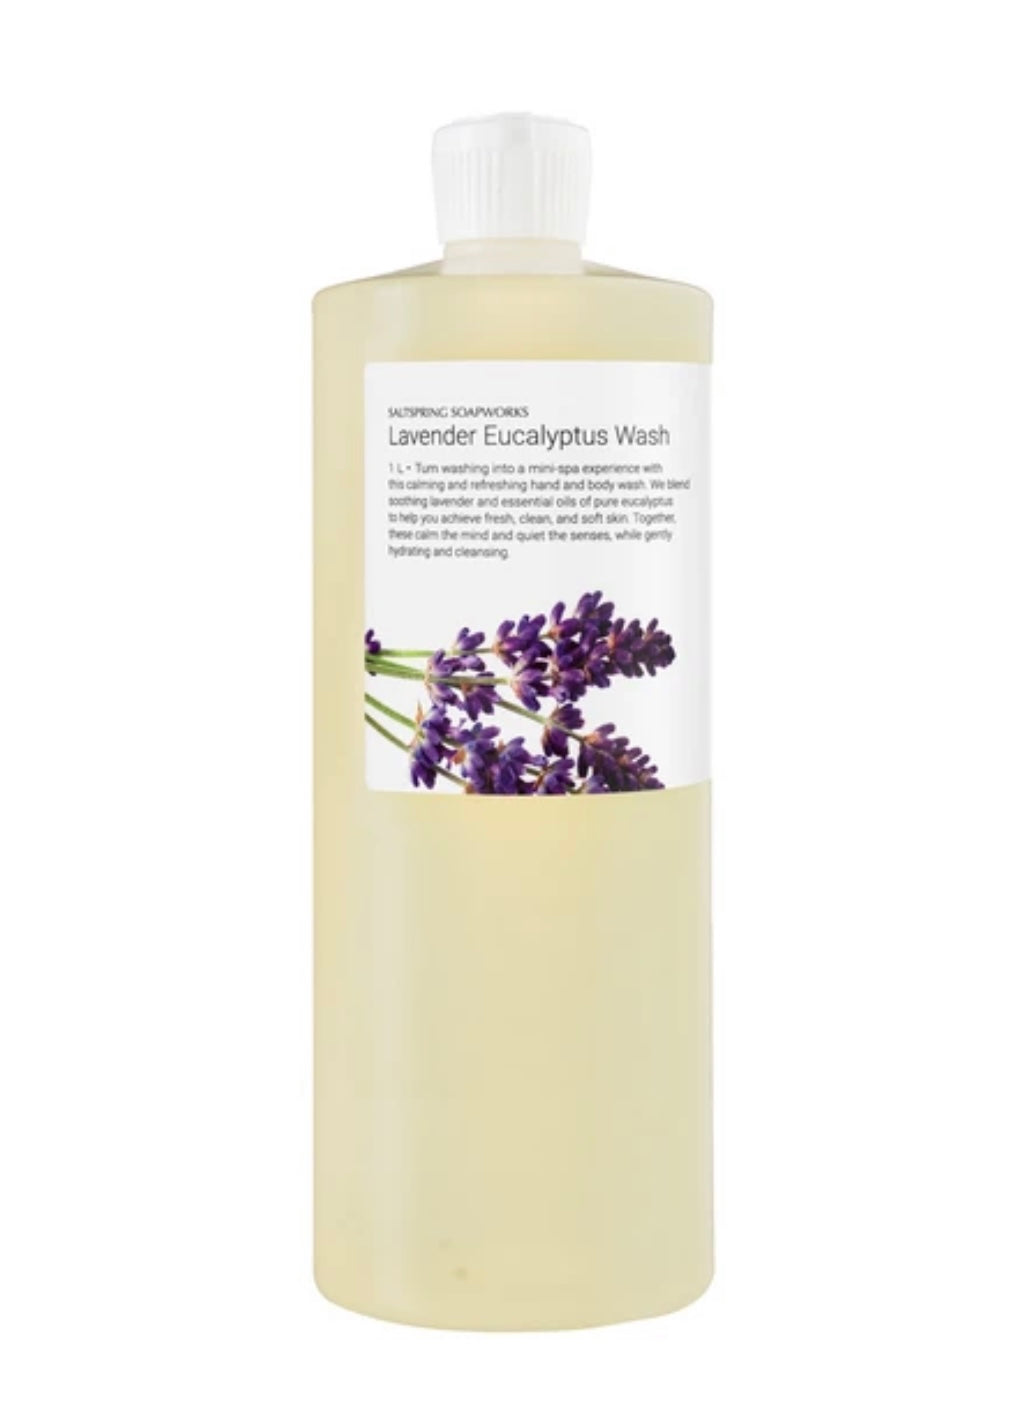 Lavender Eucalyptus Wash - 1 Liter Refill